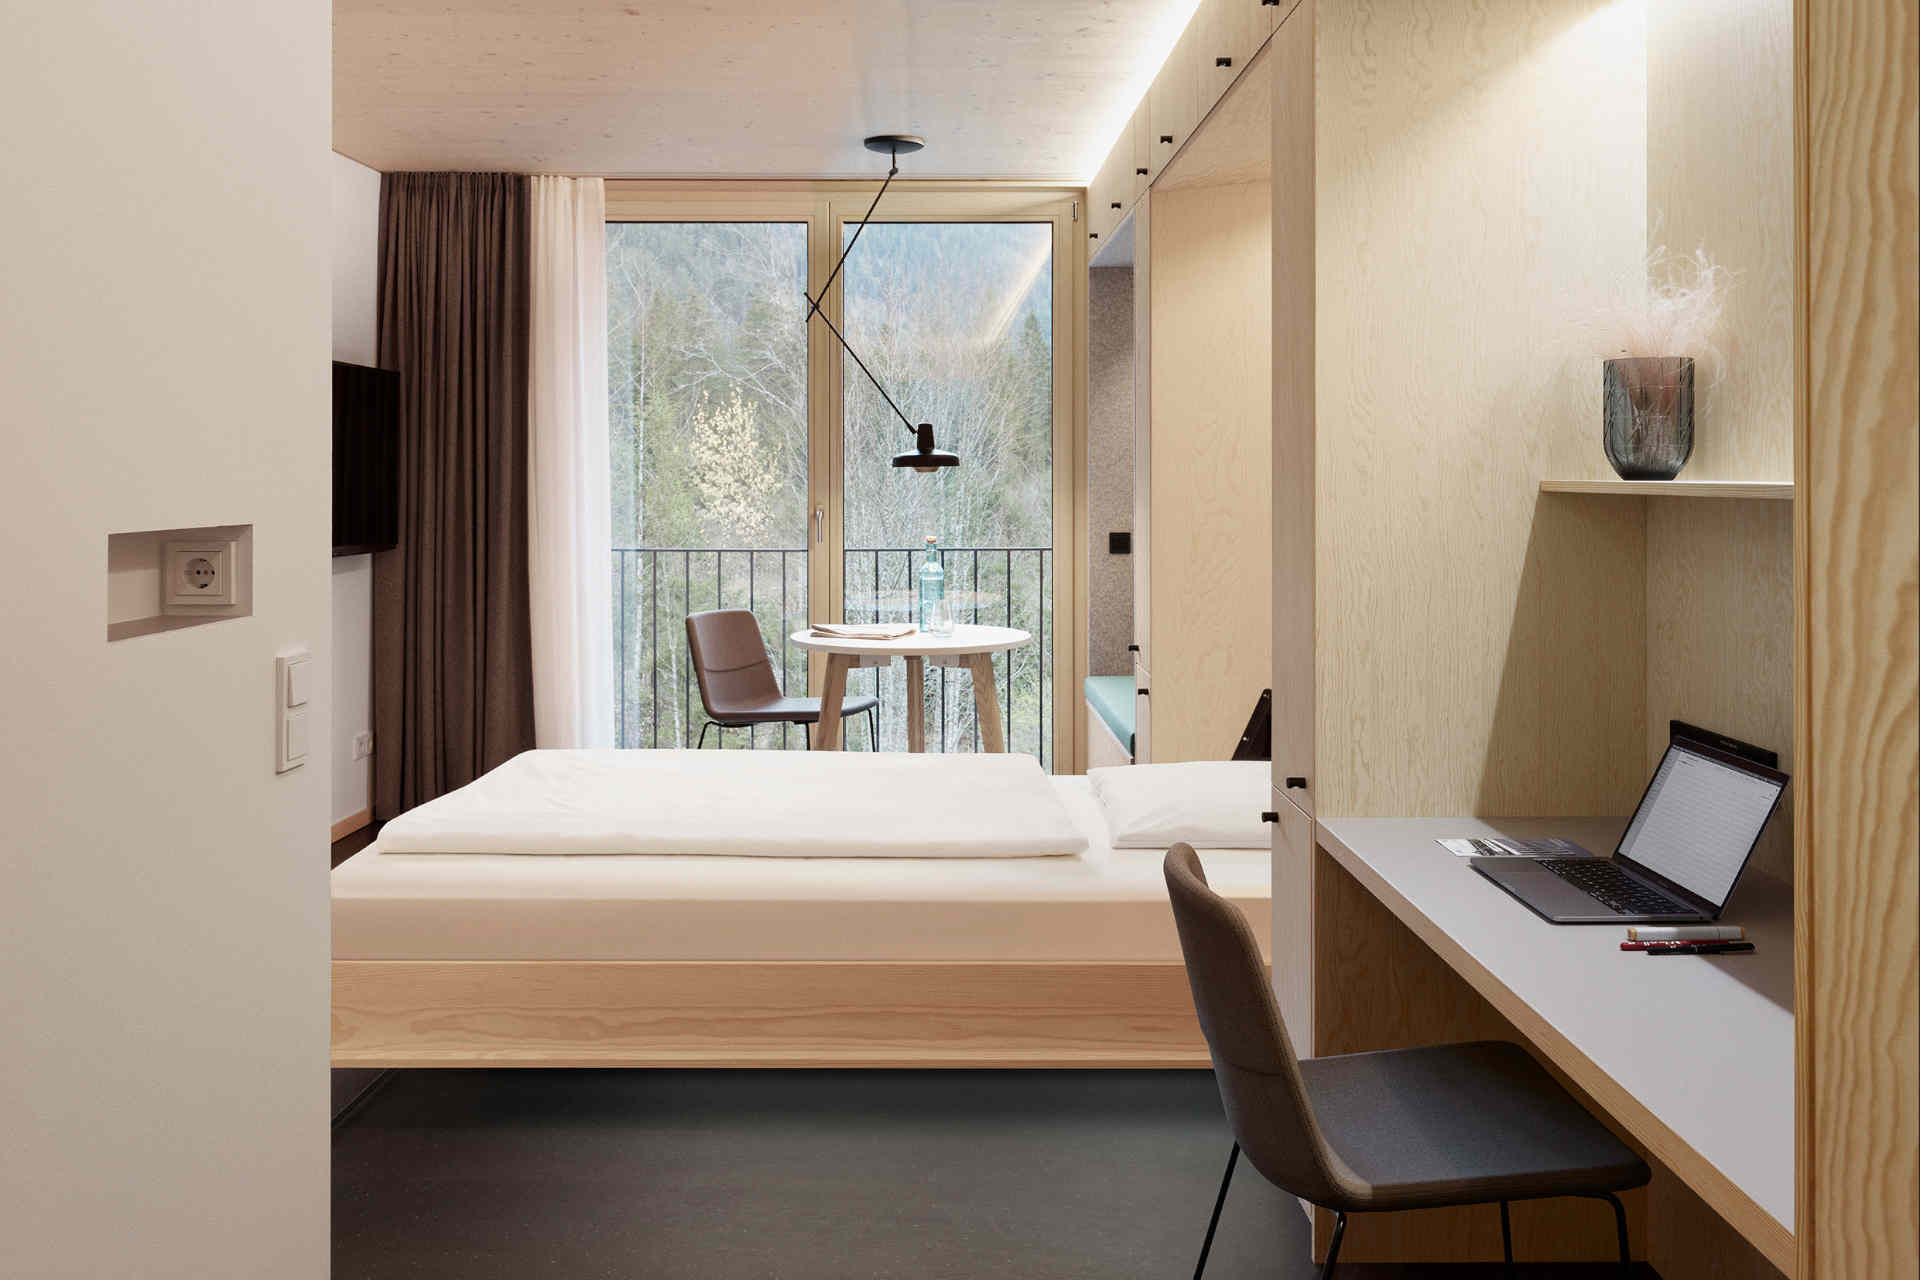 Das neue Personalhaus enthält 36 Wohneinheiten. © Alpenhotel Ammerwald